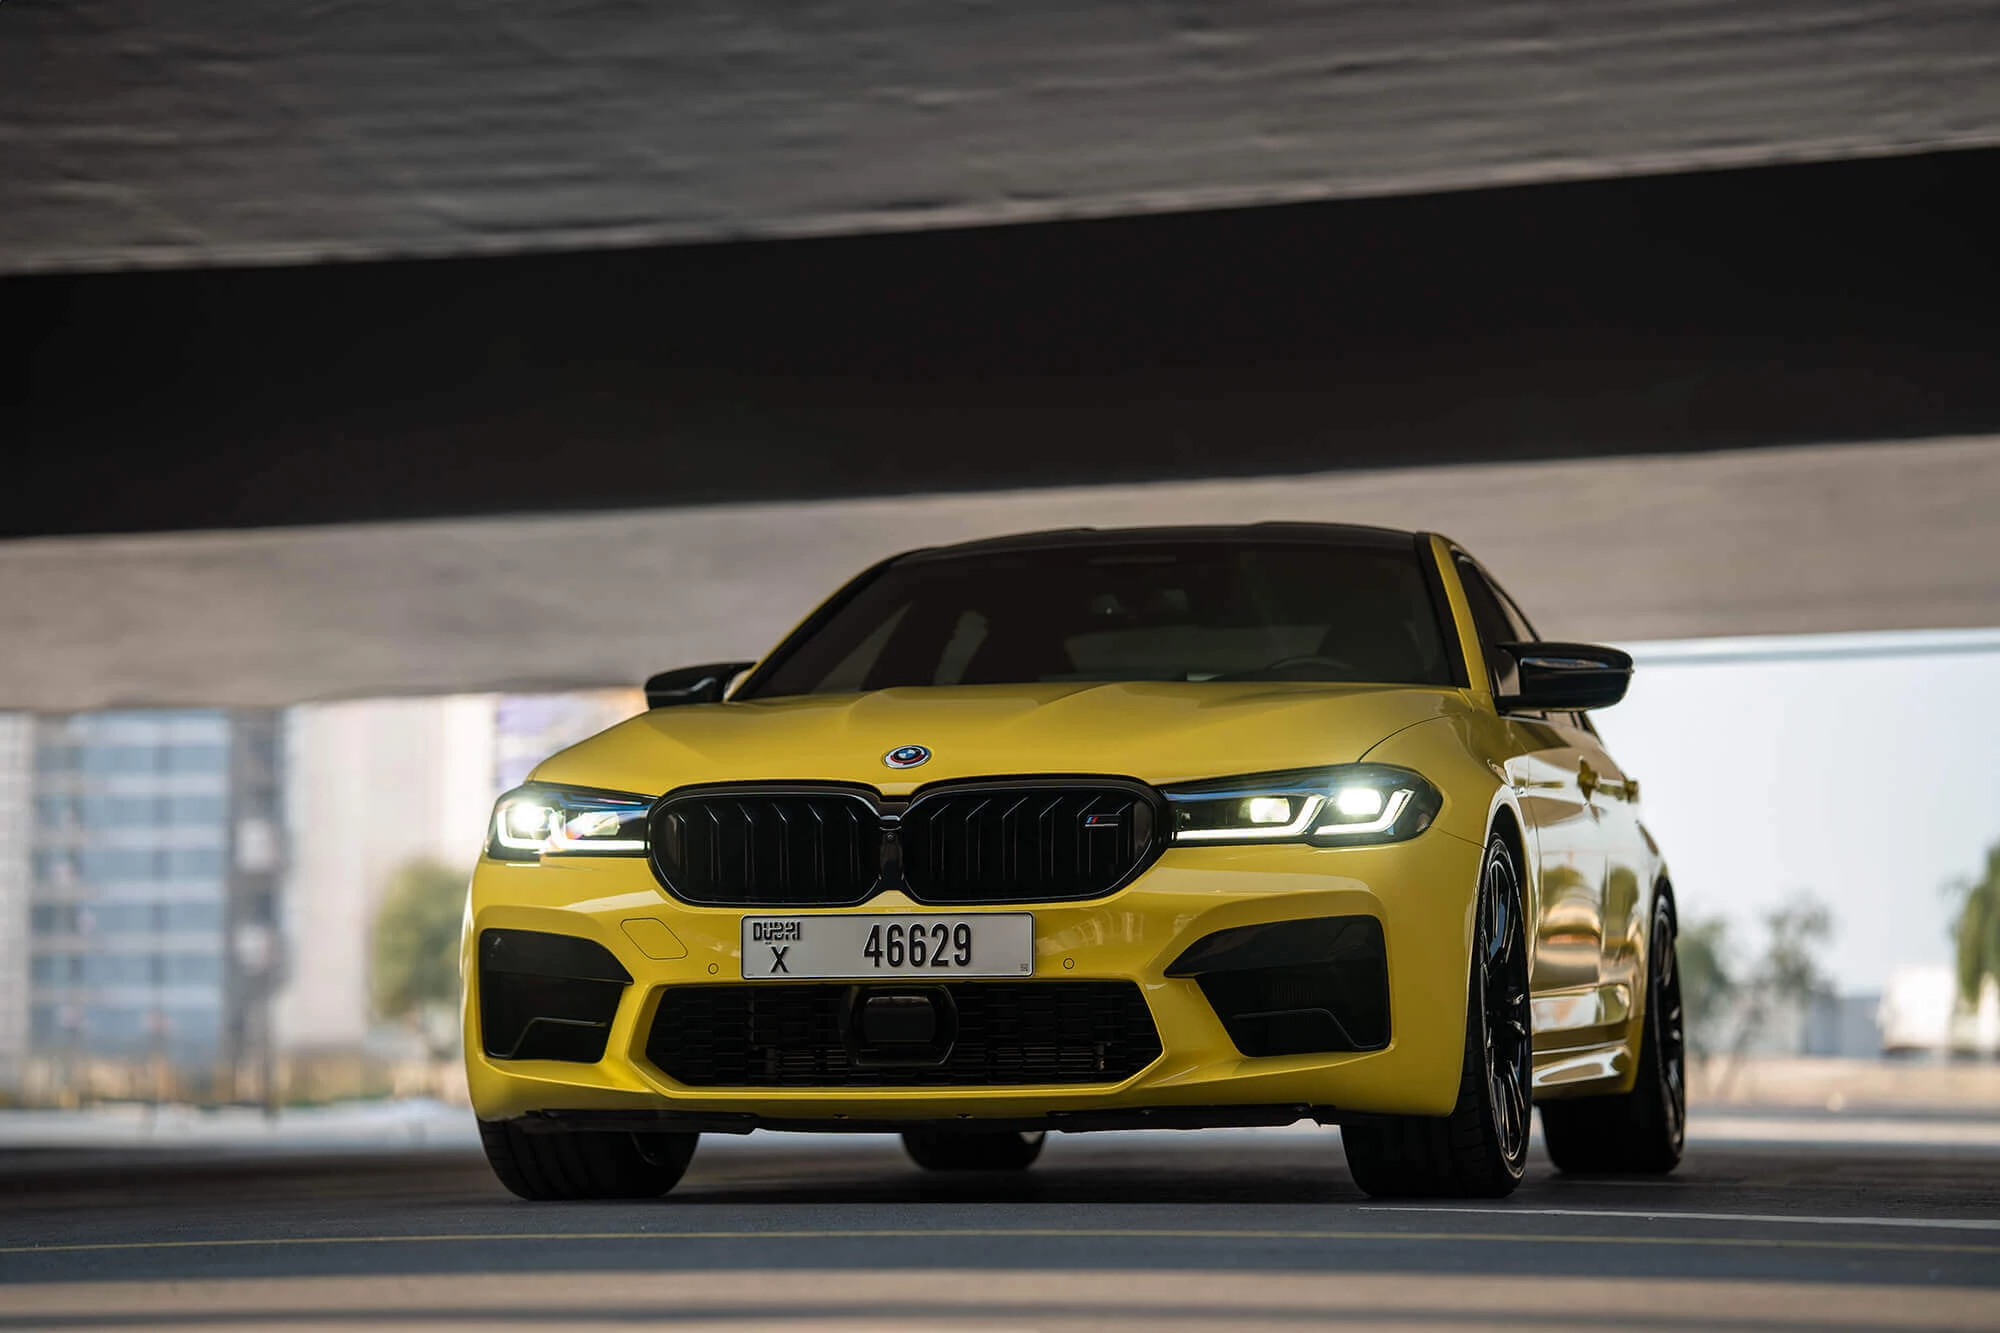 BMW M5 Wedstrijd geel